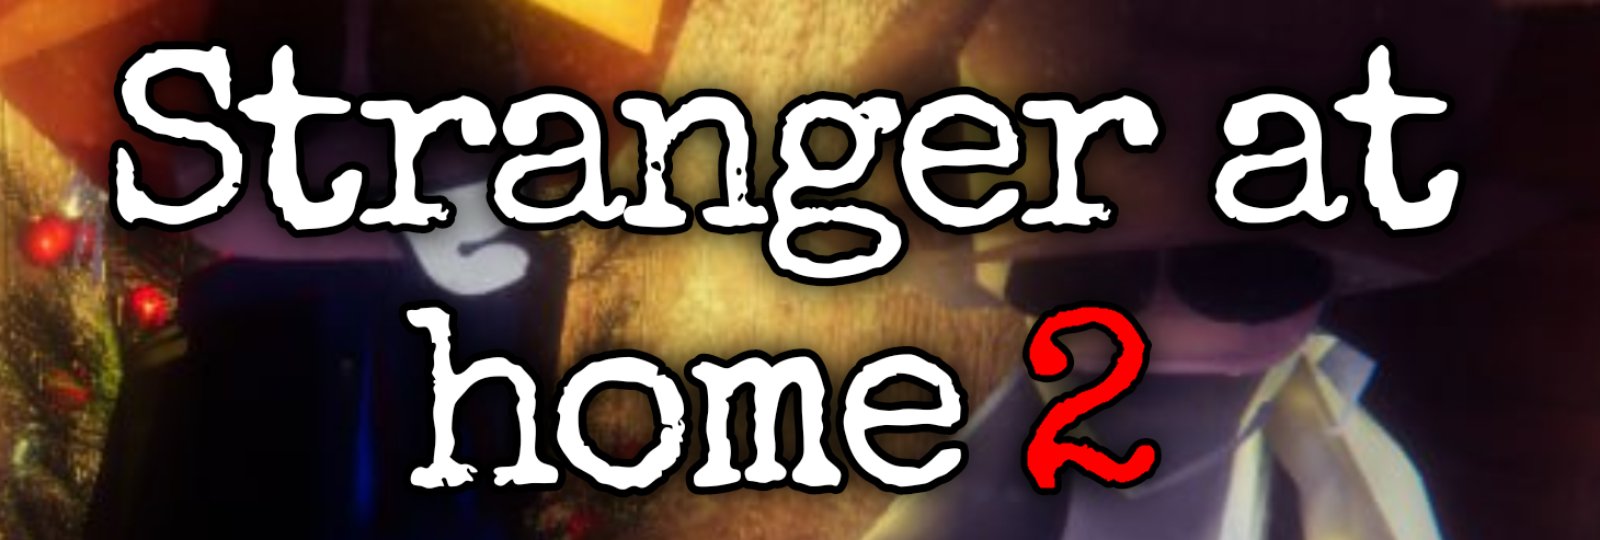 Stranger at home 2 - FINAL ESCAPE UPDATE 1.1